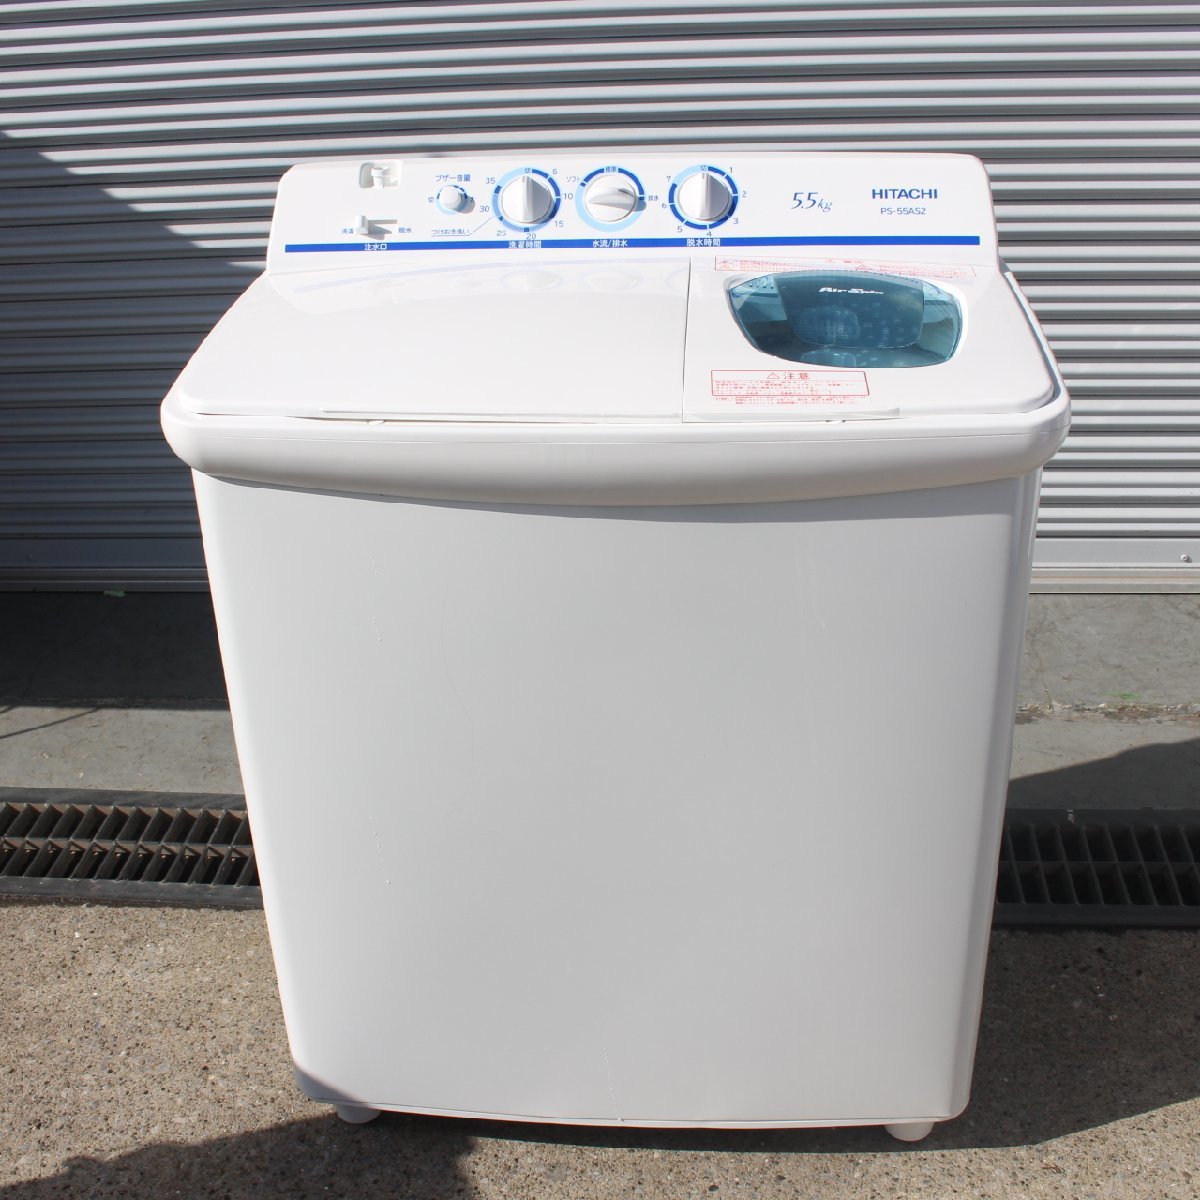 東京都文京区にて 日立 二槽式洗濯機 青空 PS-55AS2 2018年製 を出張買取させて頂きました。